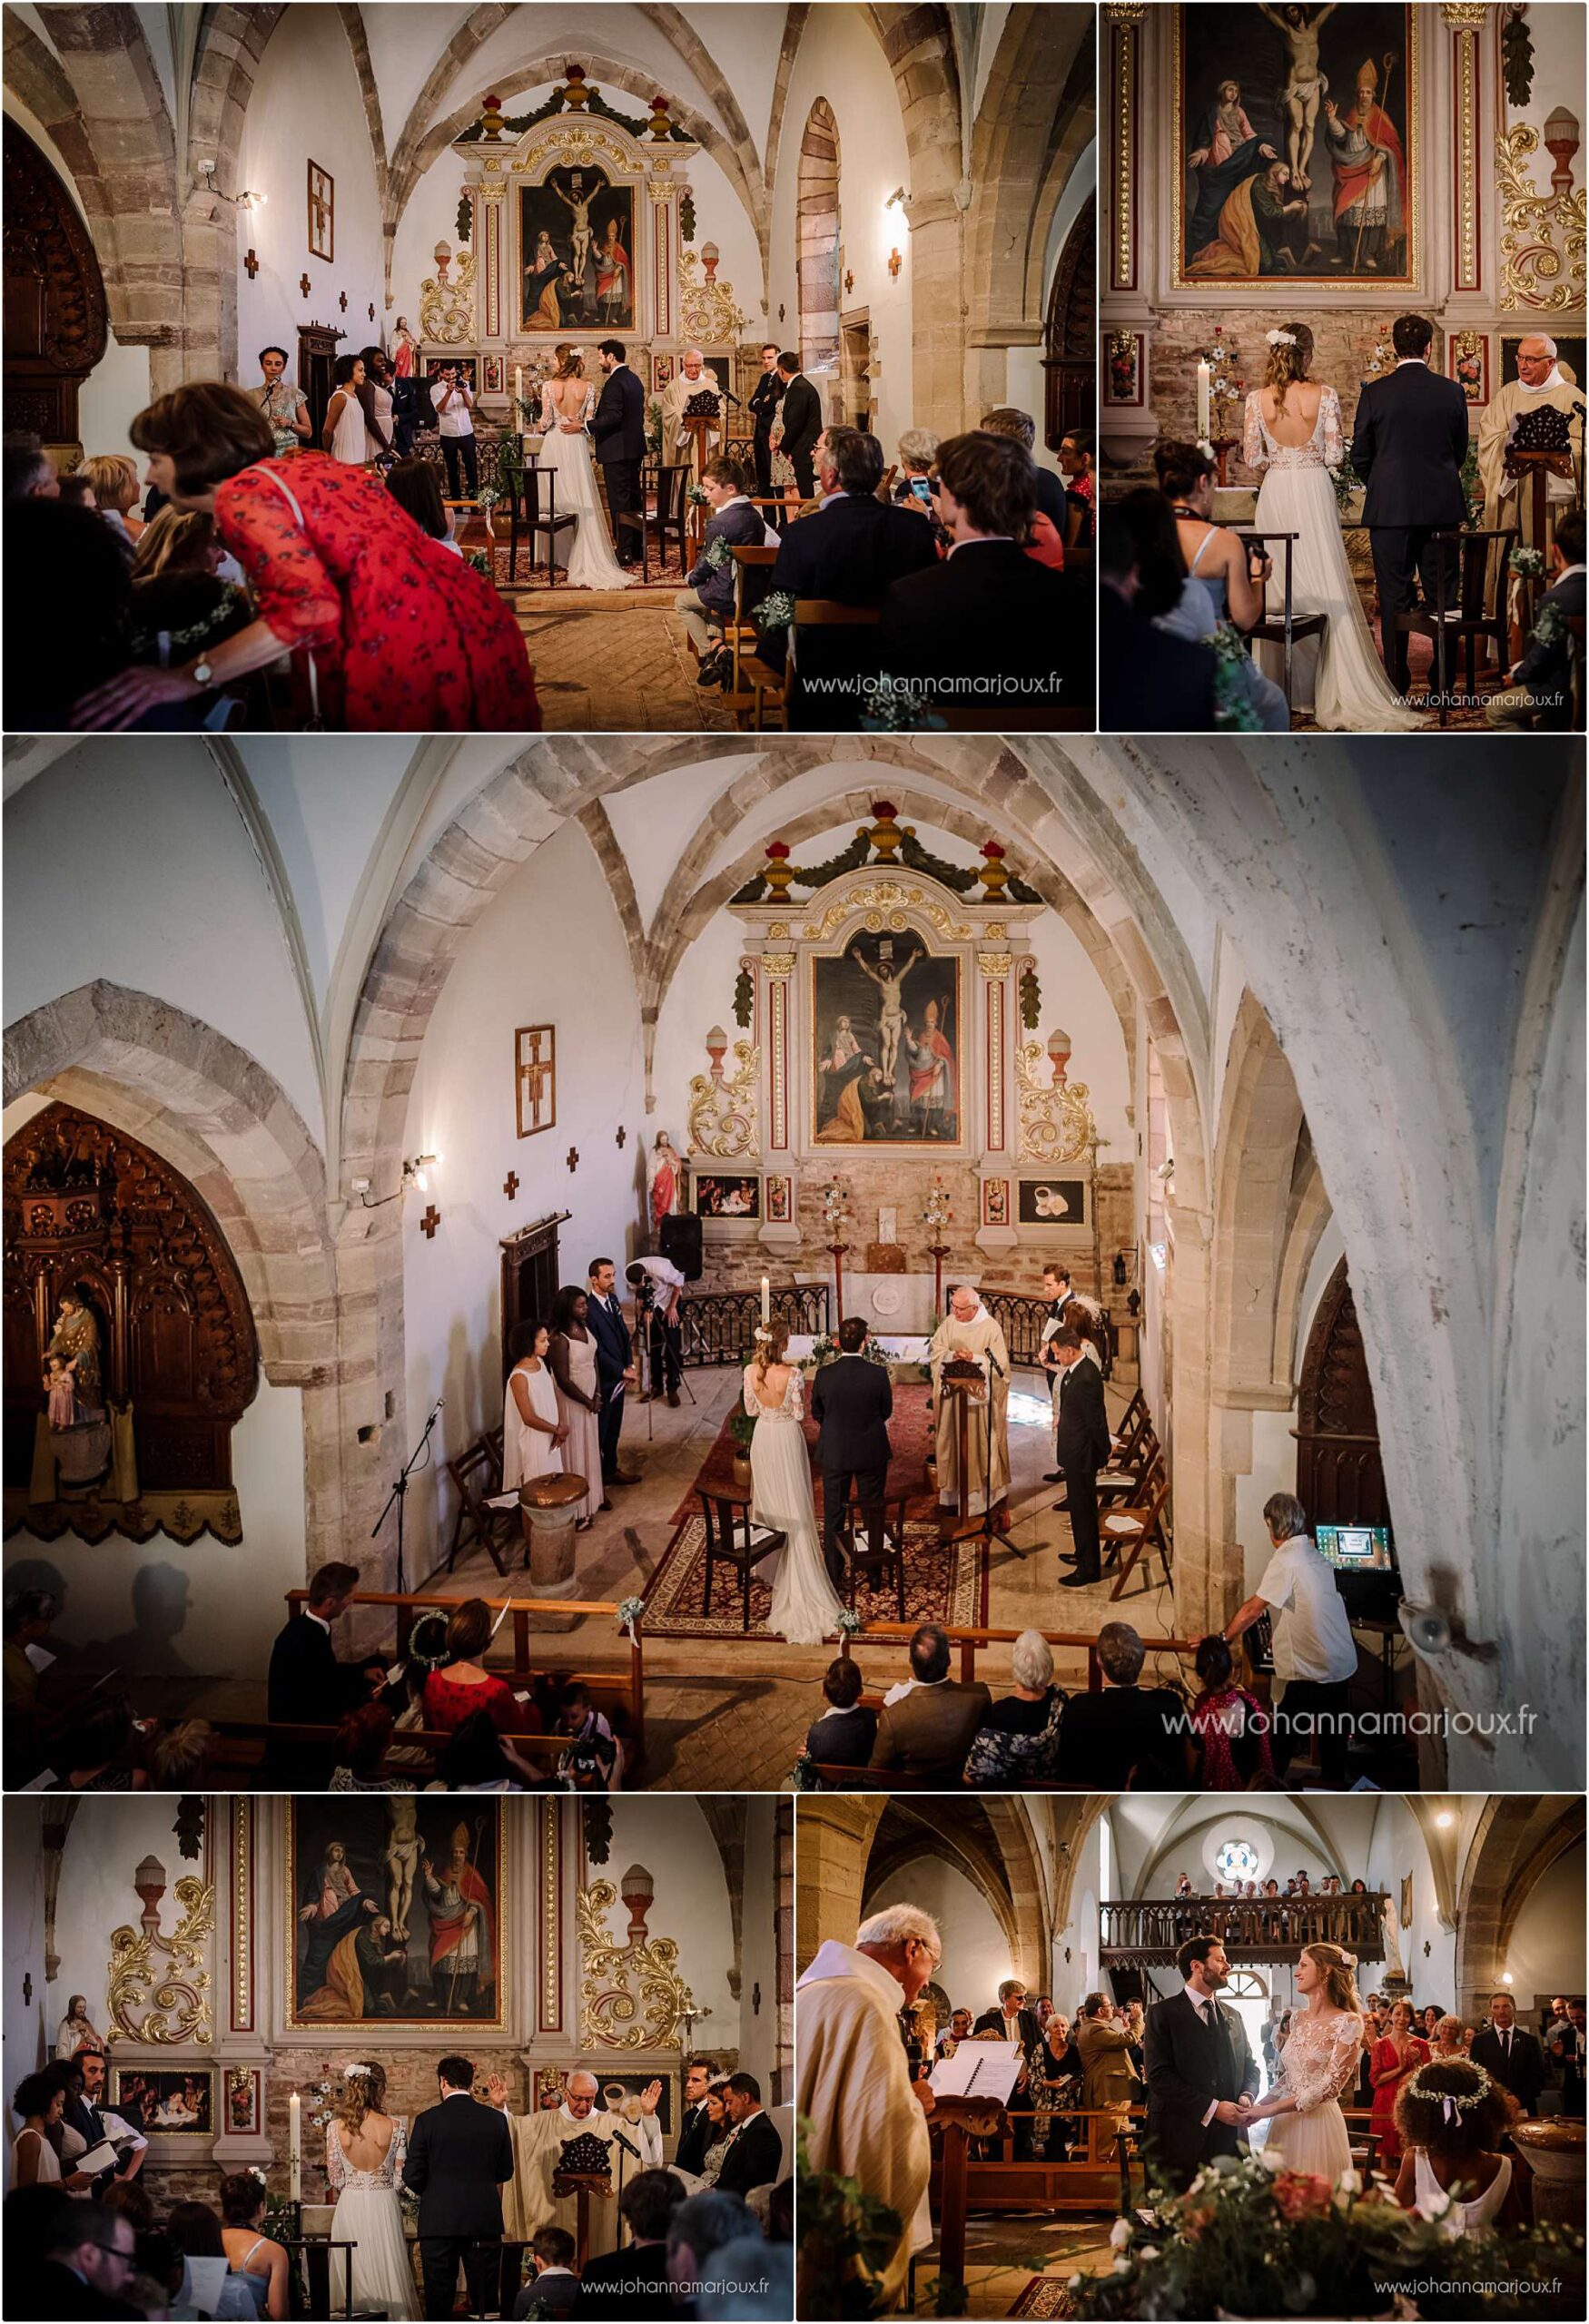 Cérémonie de mariage dans une adorable église en Aveyron